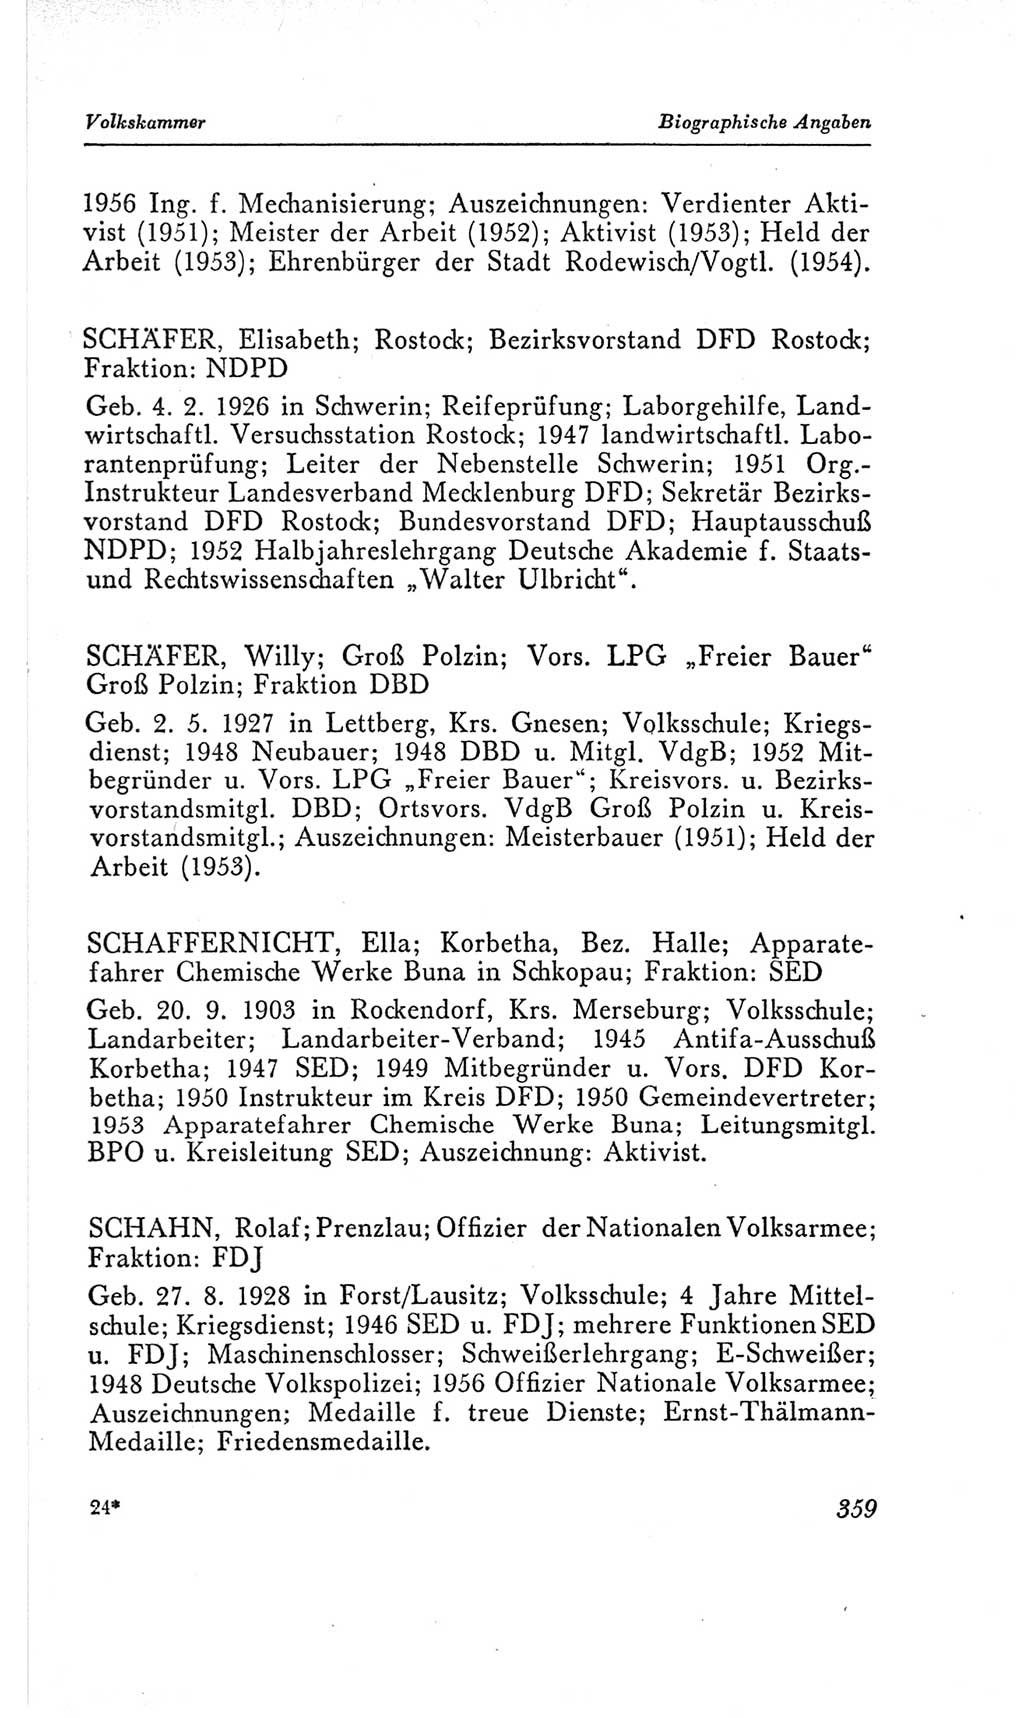 Handbuch der Volkskammer (VK) der Deutschen Demokratischen Republik (DDR), 2. Wahlperiode 1954-1958, Seite 359 (Hdb. VK. DDR, 2. WP. 1954-1958, S. 359)